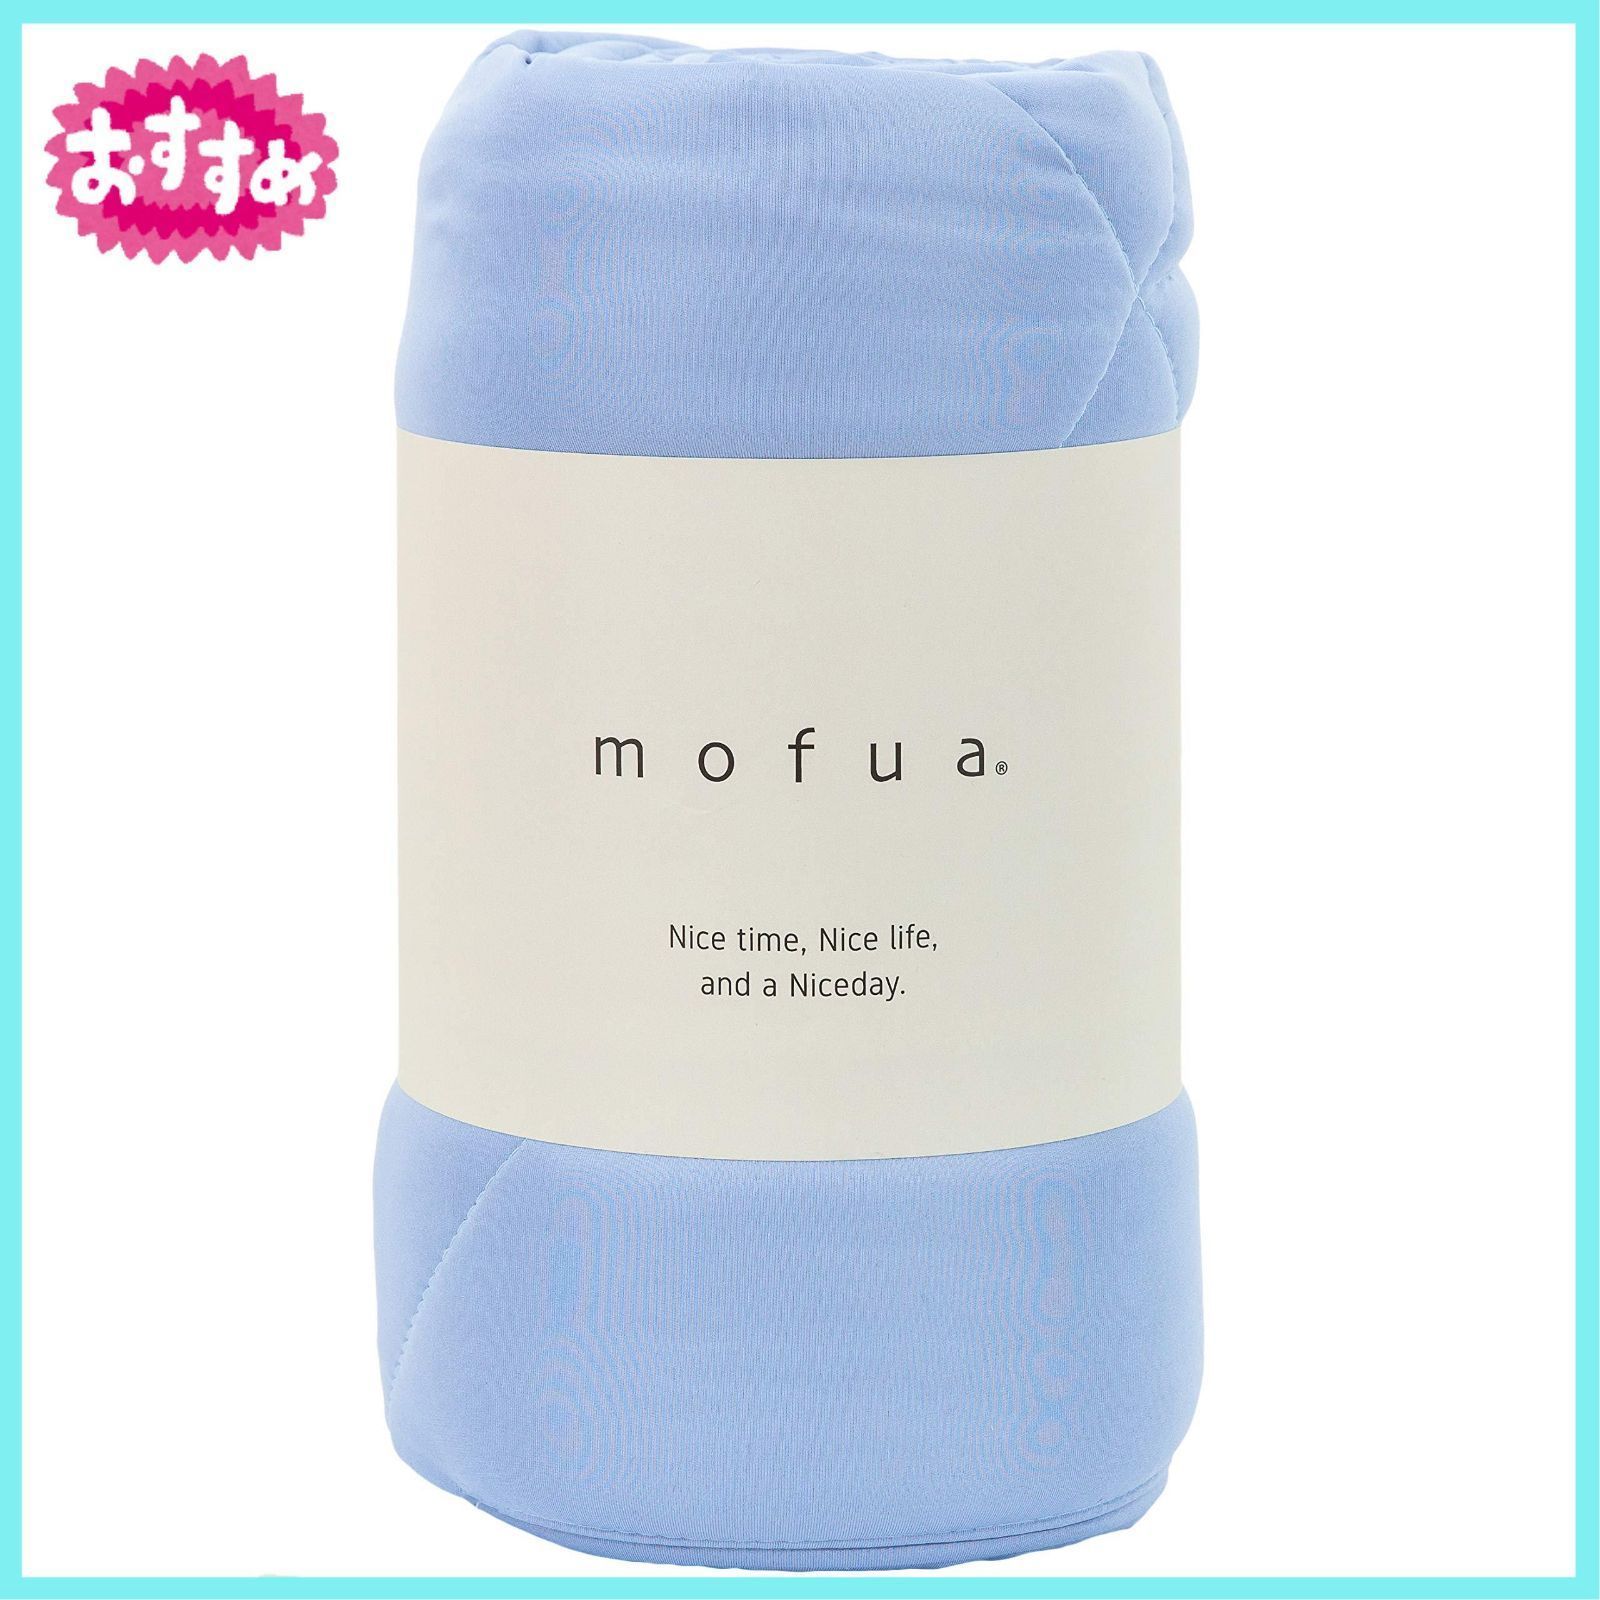 mofua(モフア) 掛け布団 肌掛け キルトケット ブルー シングル ふんわり 雲に包まれる やわらか 極細 ニット生地 ソフトタッチ 洗える  31200144